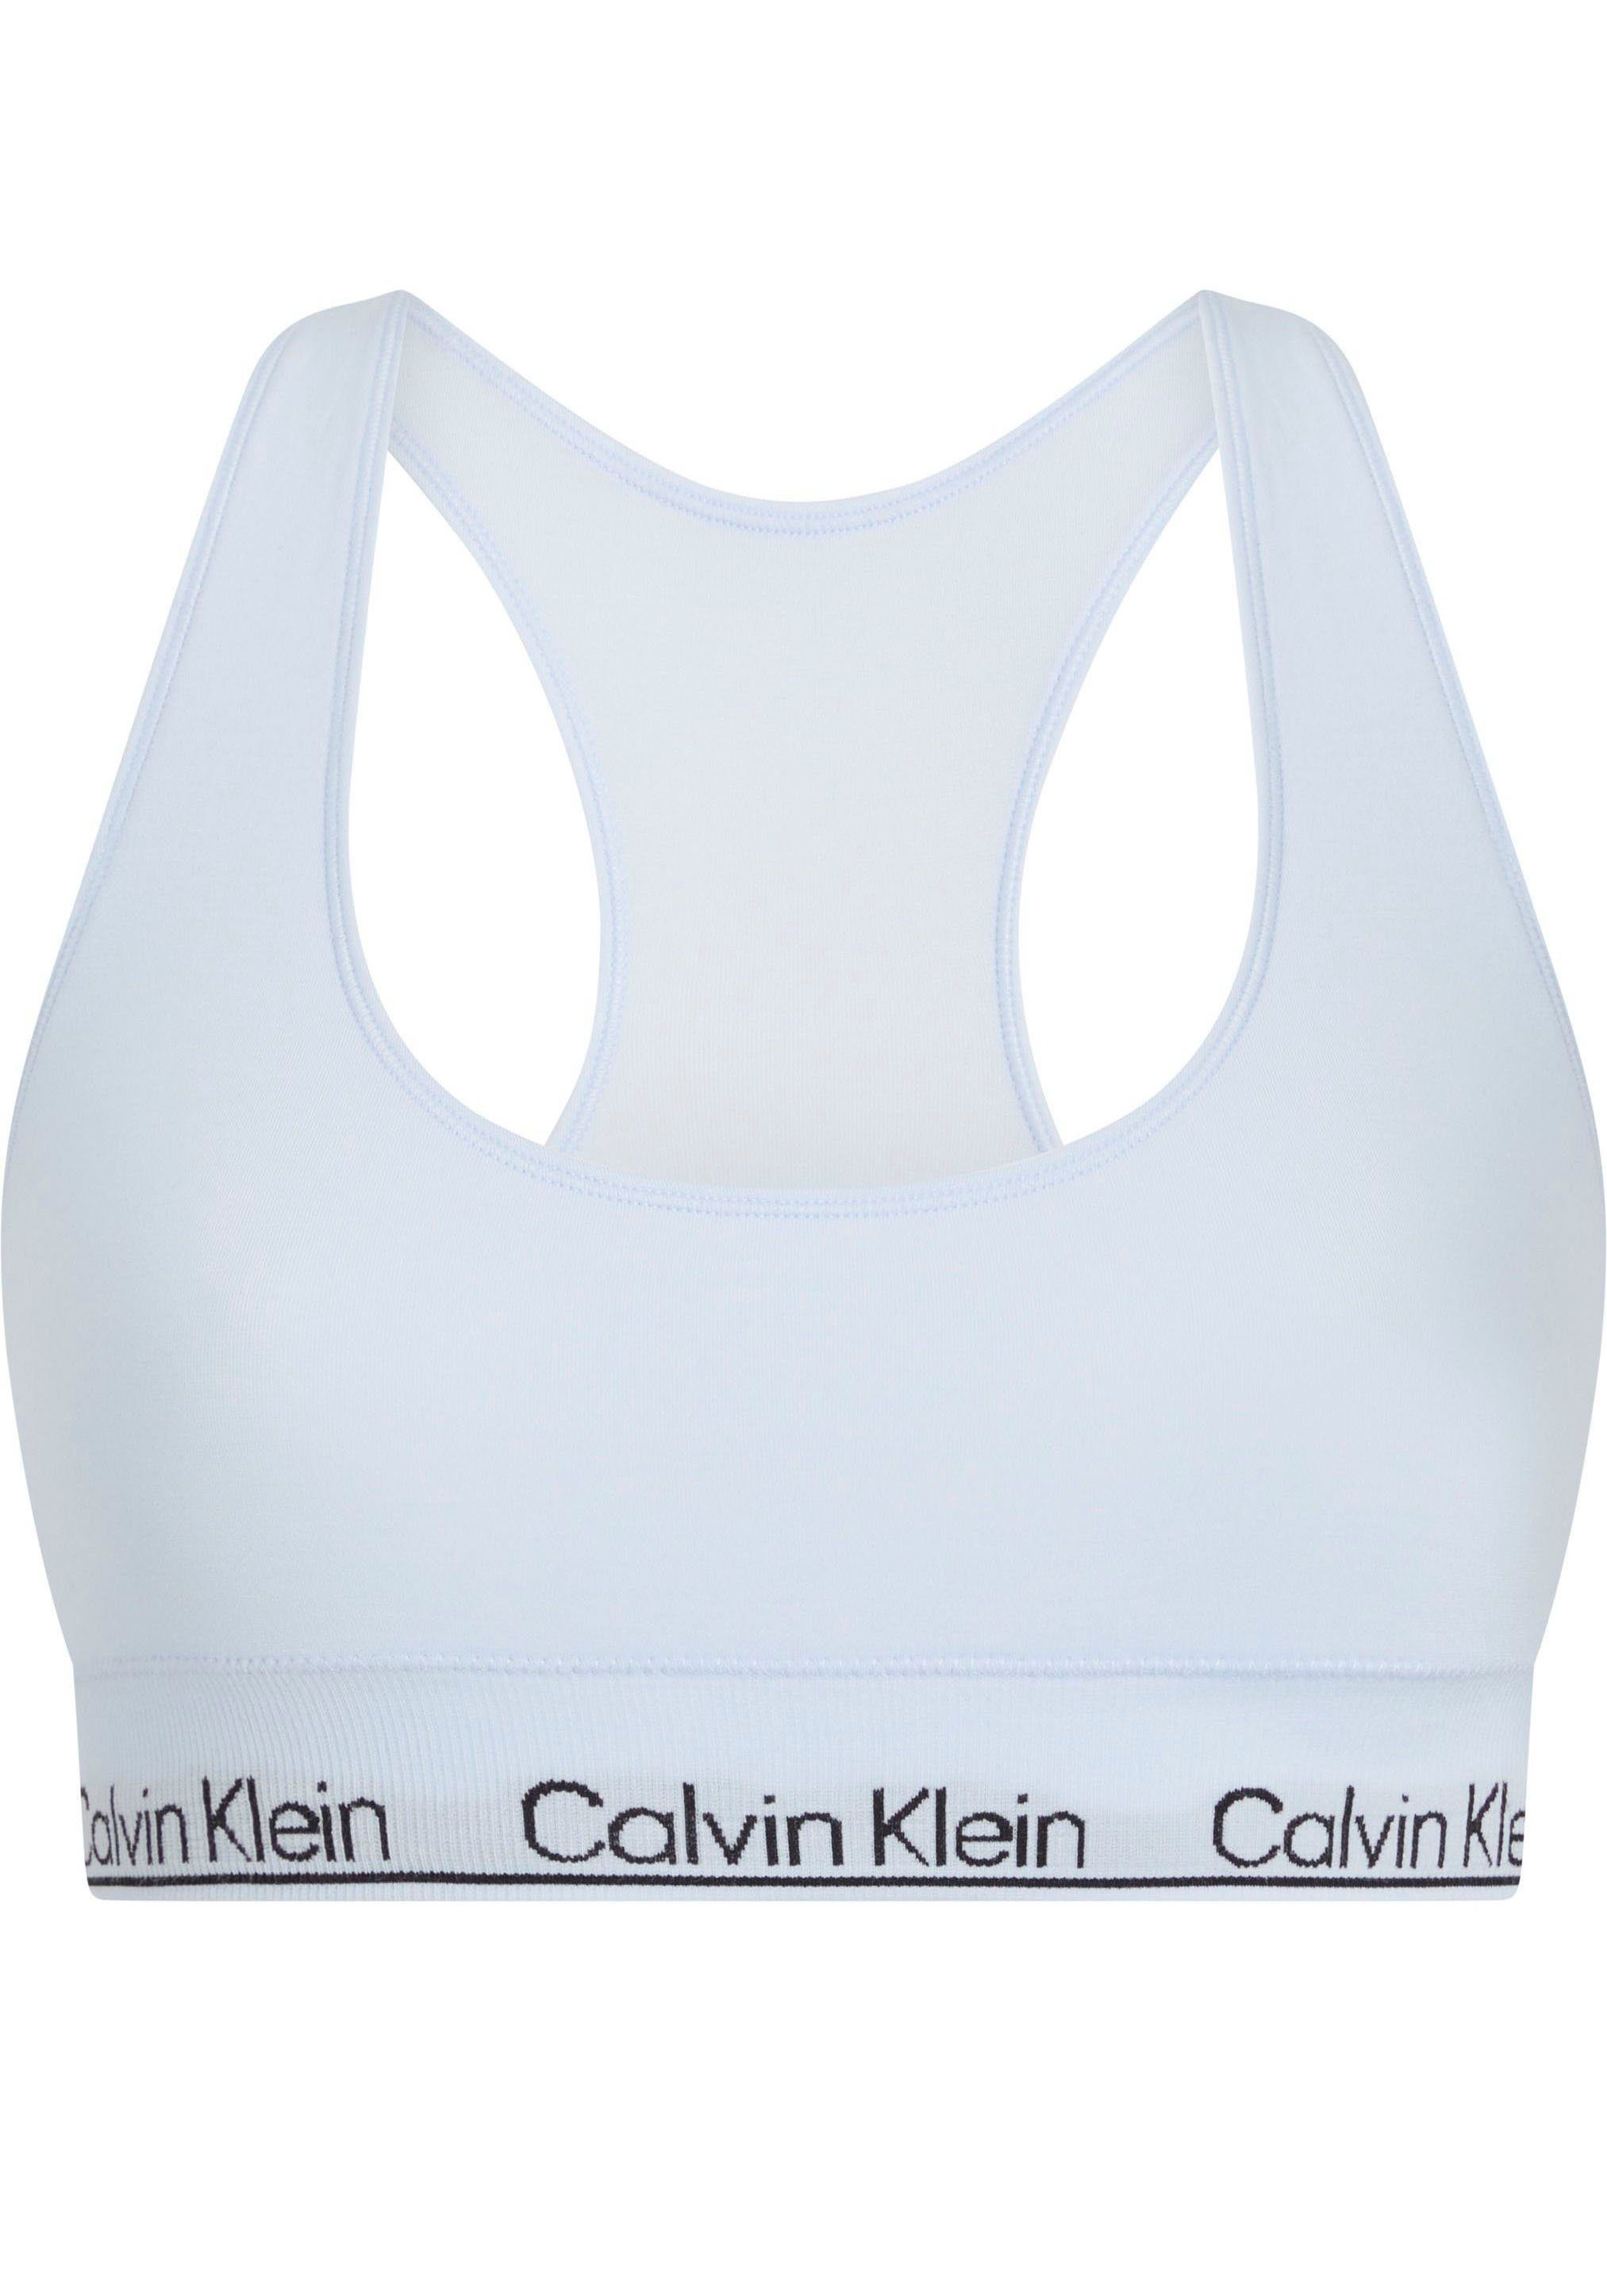 Underwear Calvin Klein mit CK-Logoschriftzug hellblau Bralette-BH BRALETTE RACERBACK